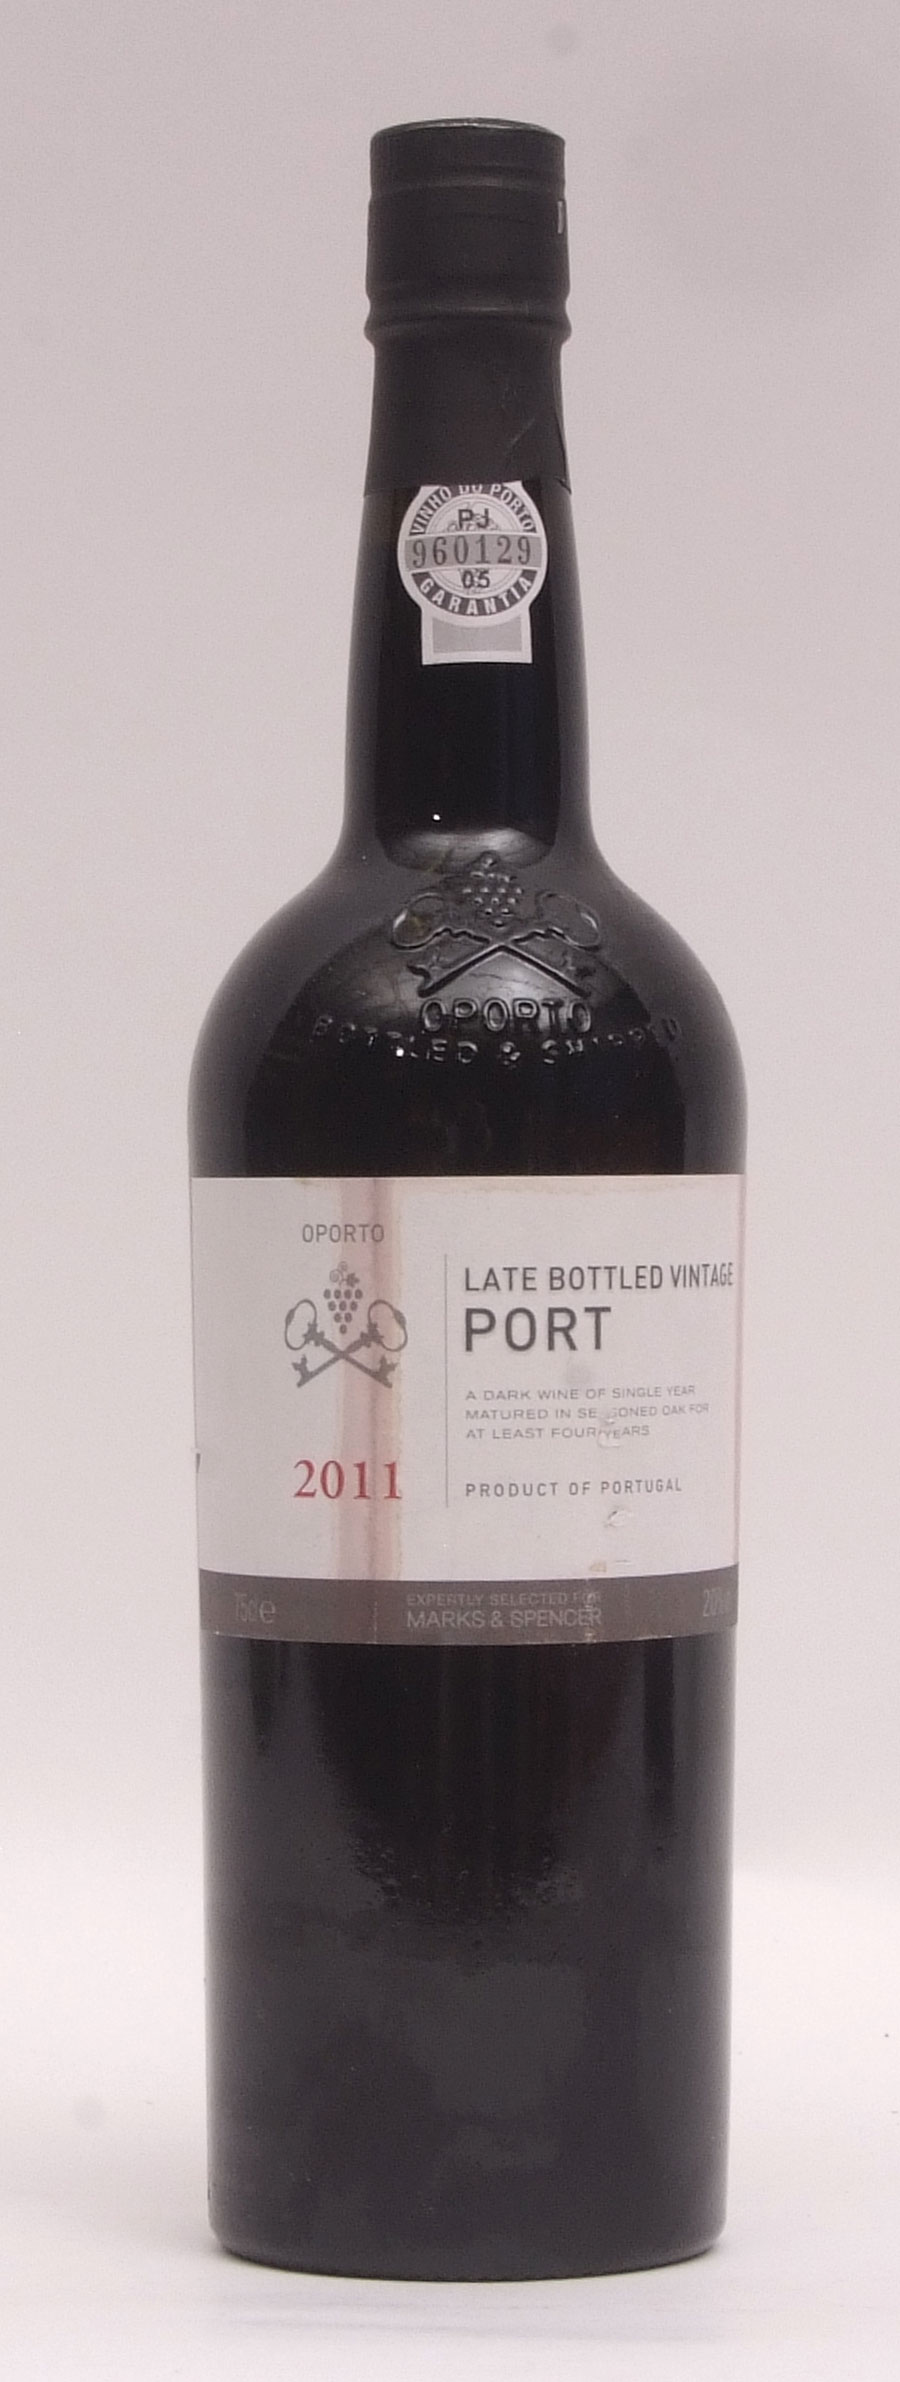 Marks & Spencer LBV Port 2011, 1 bottle